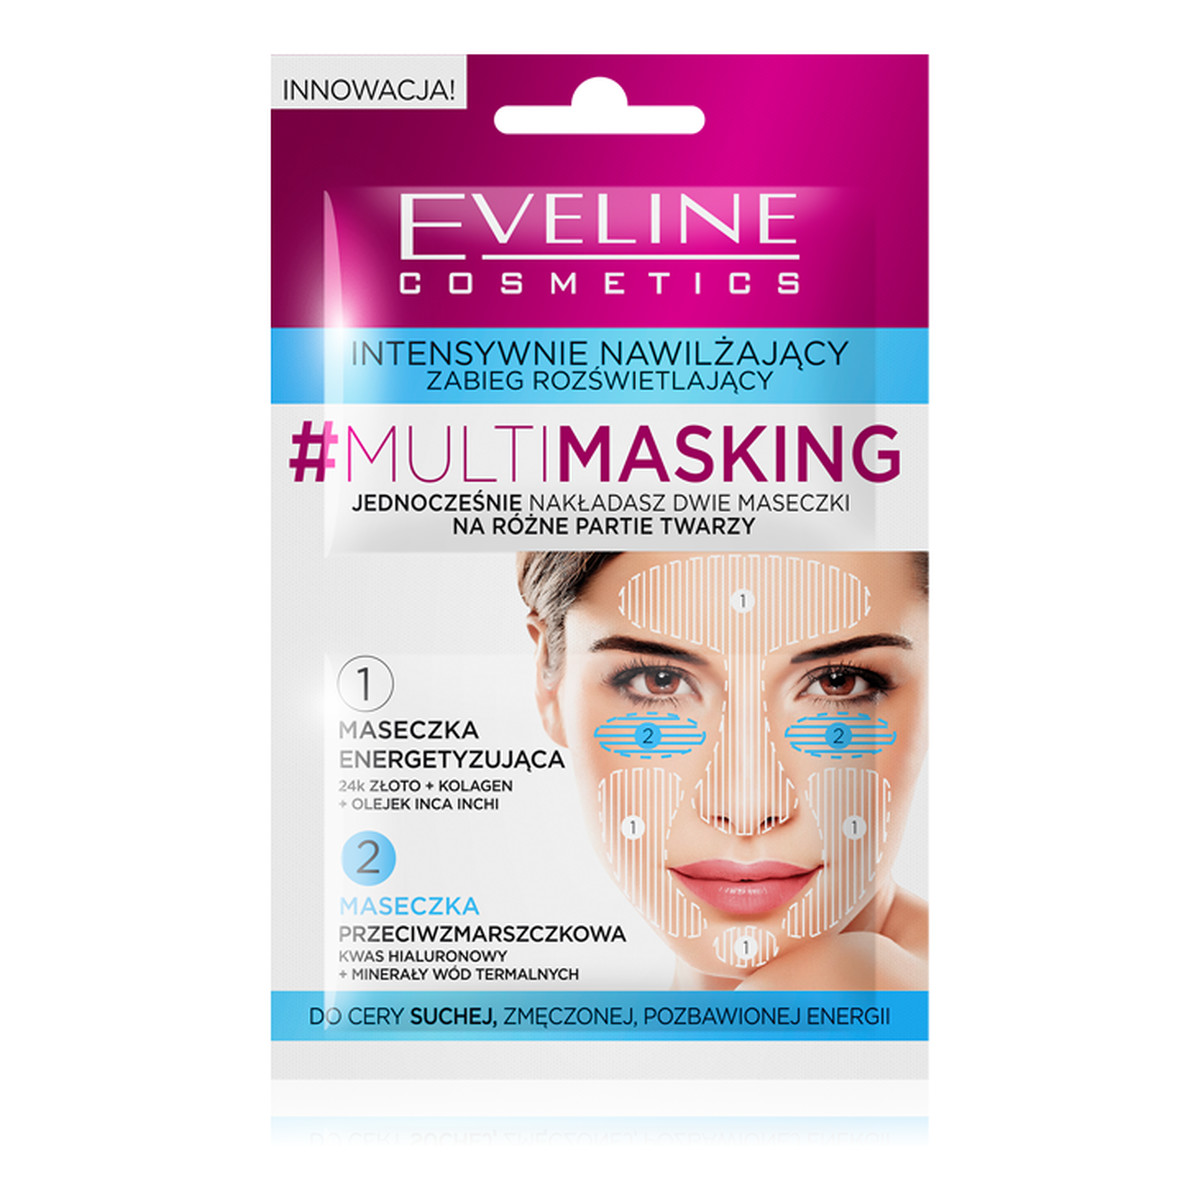 Eveline Multi - Masking Maseczka Do Twarzy Intensywnie Nawilżający Zabieg Rozświetlający 10ml